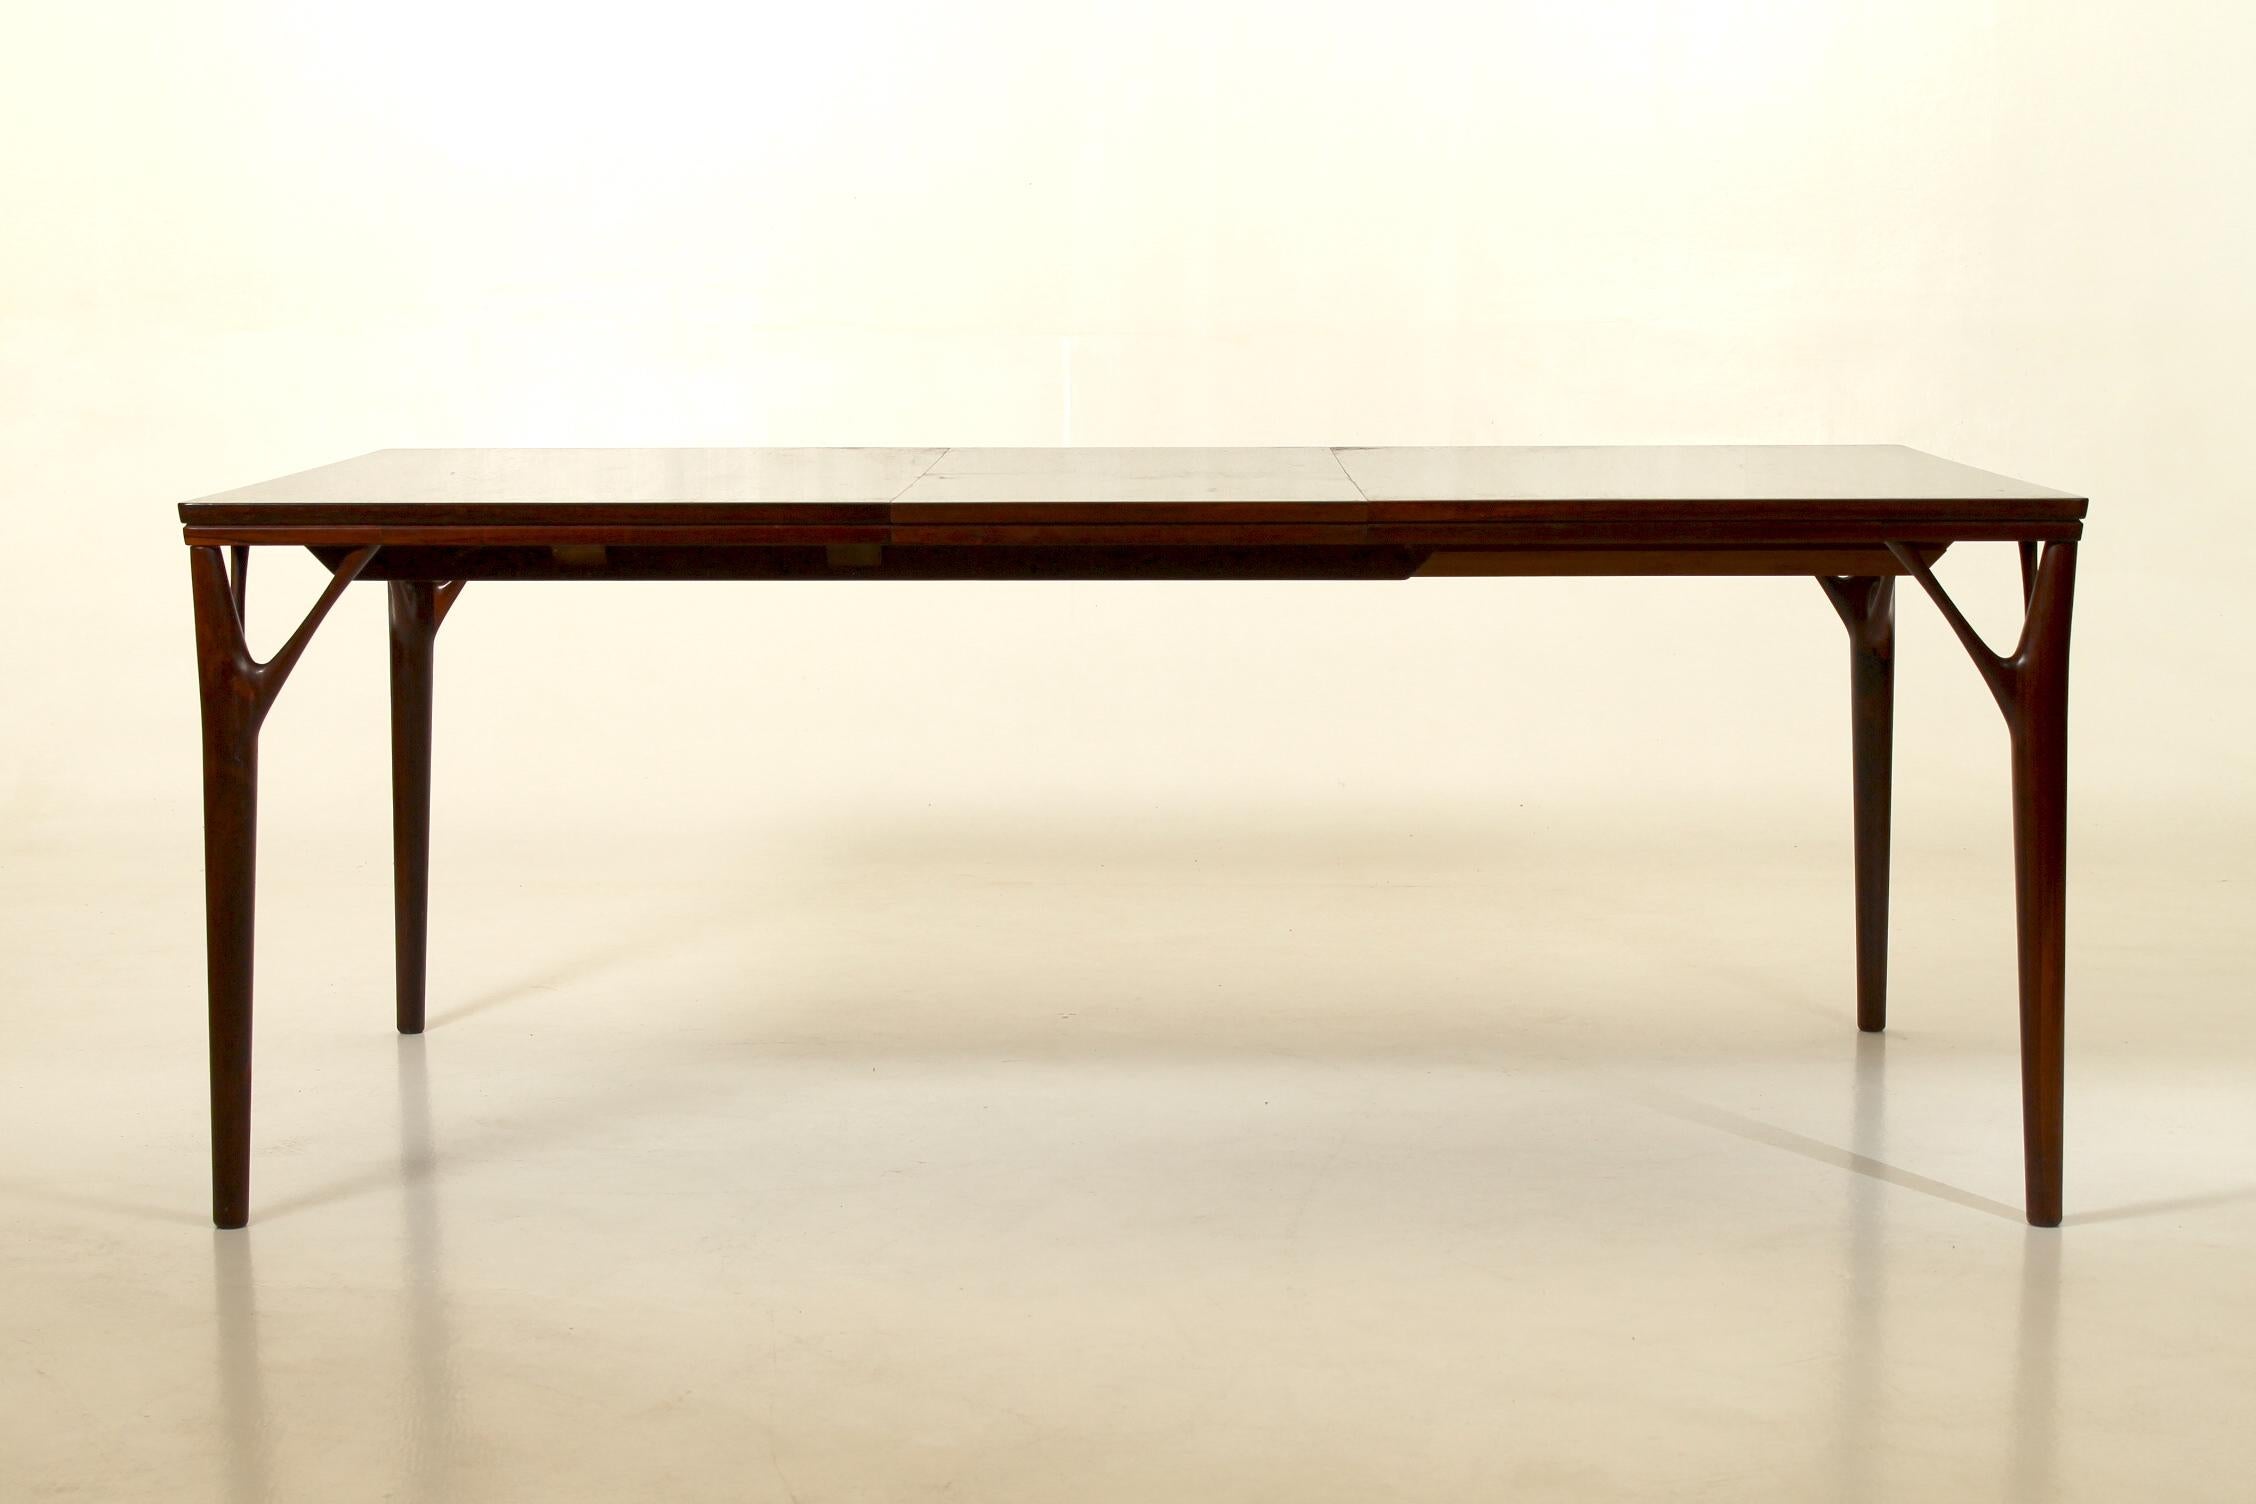 Rechteckiger dänischer Esstisch aus Palisanderholz, entworfen von Helge Vestergaard Jensen für Søren Horn in den späten 1960er Jahren. 8-12 Plätze, ausziehbare Klappe, die unter der Tischplatte verborgen ist.
Die Verlängerung misst 46 cm.
Die